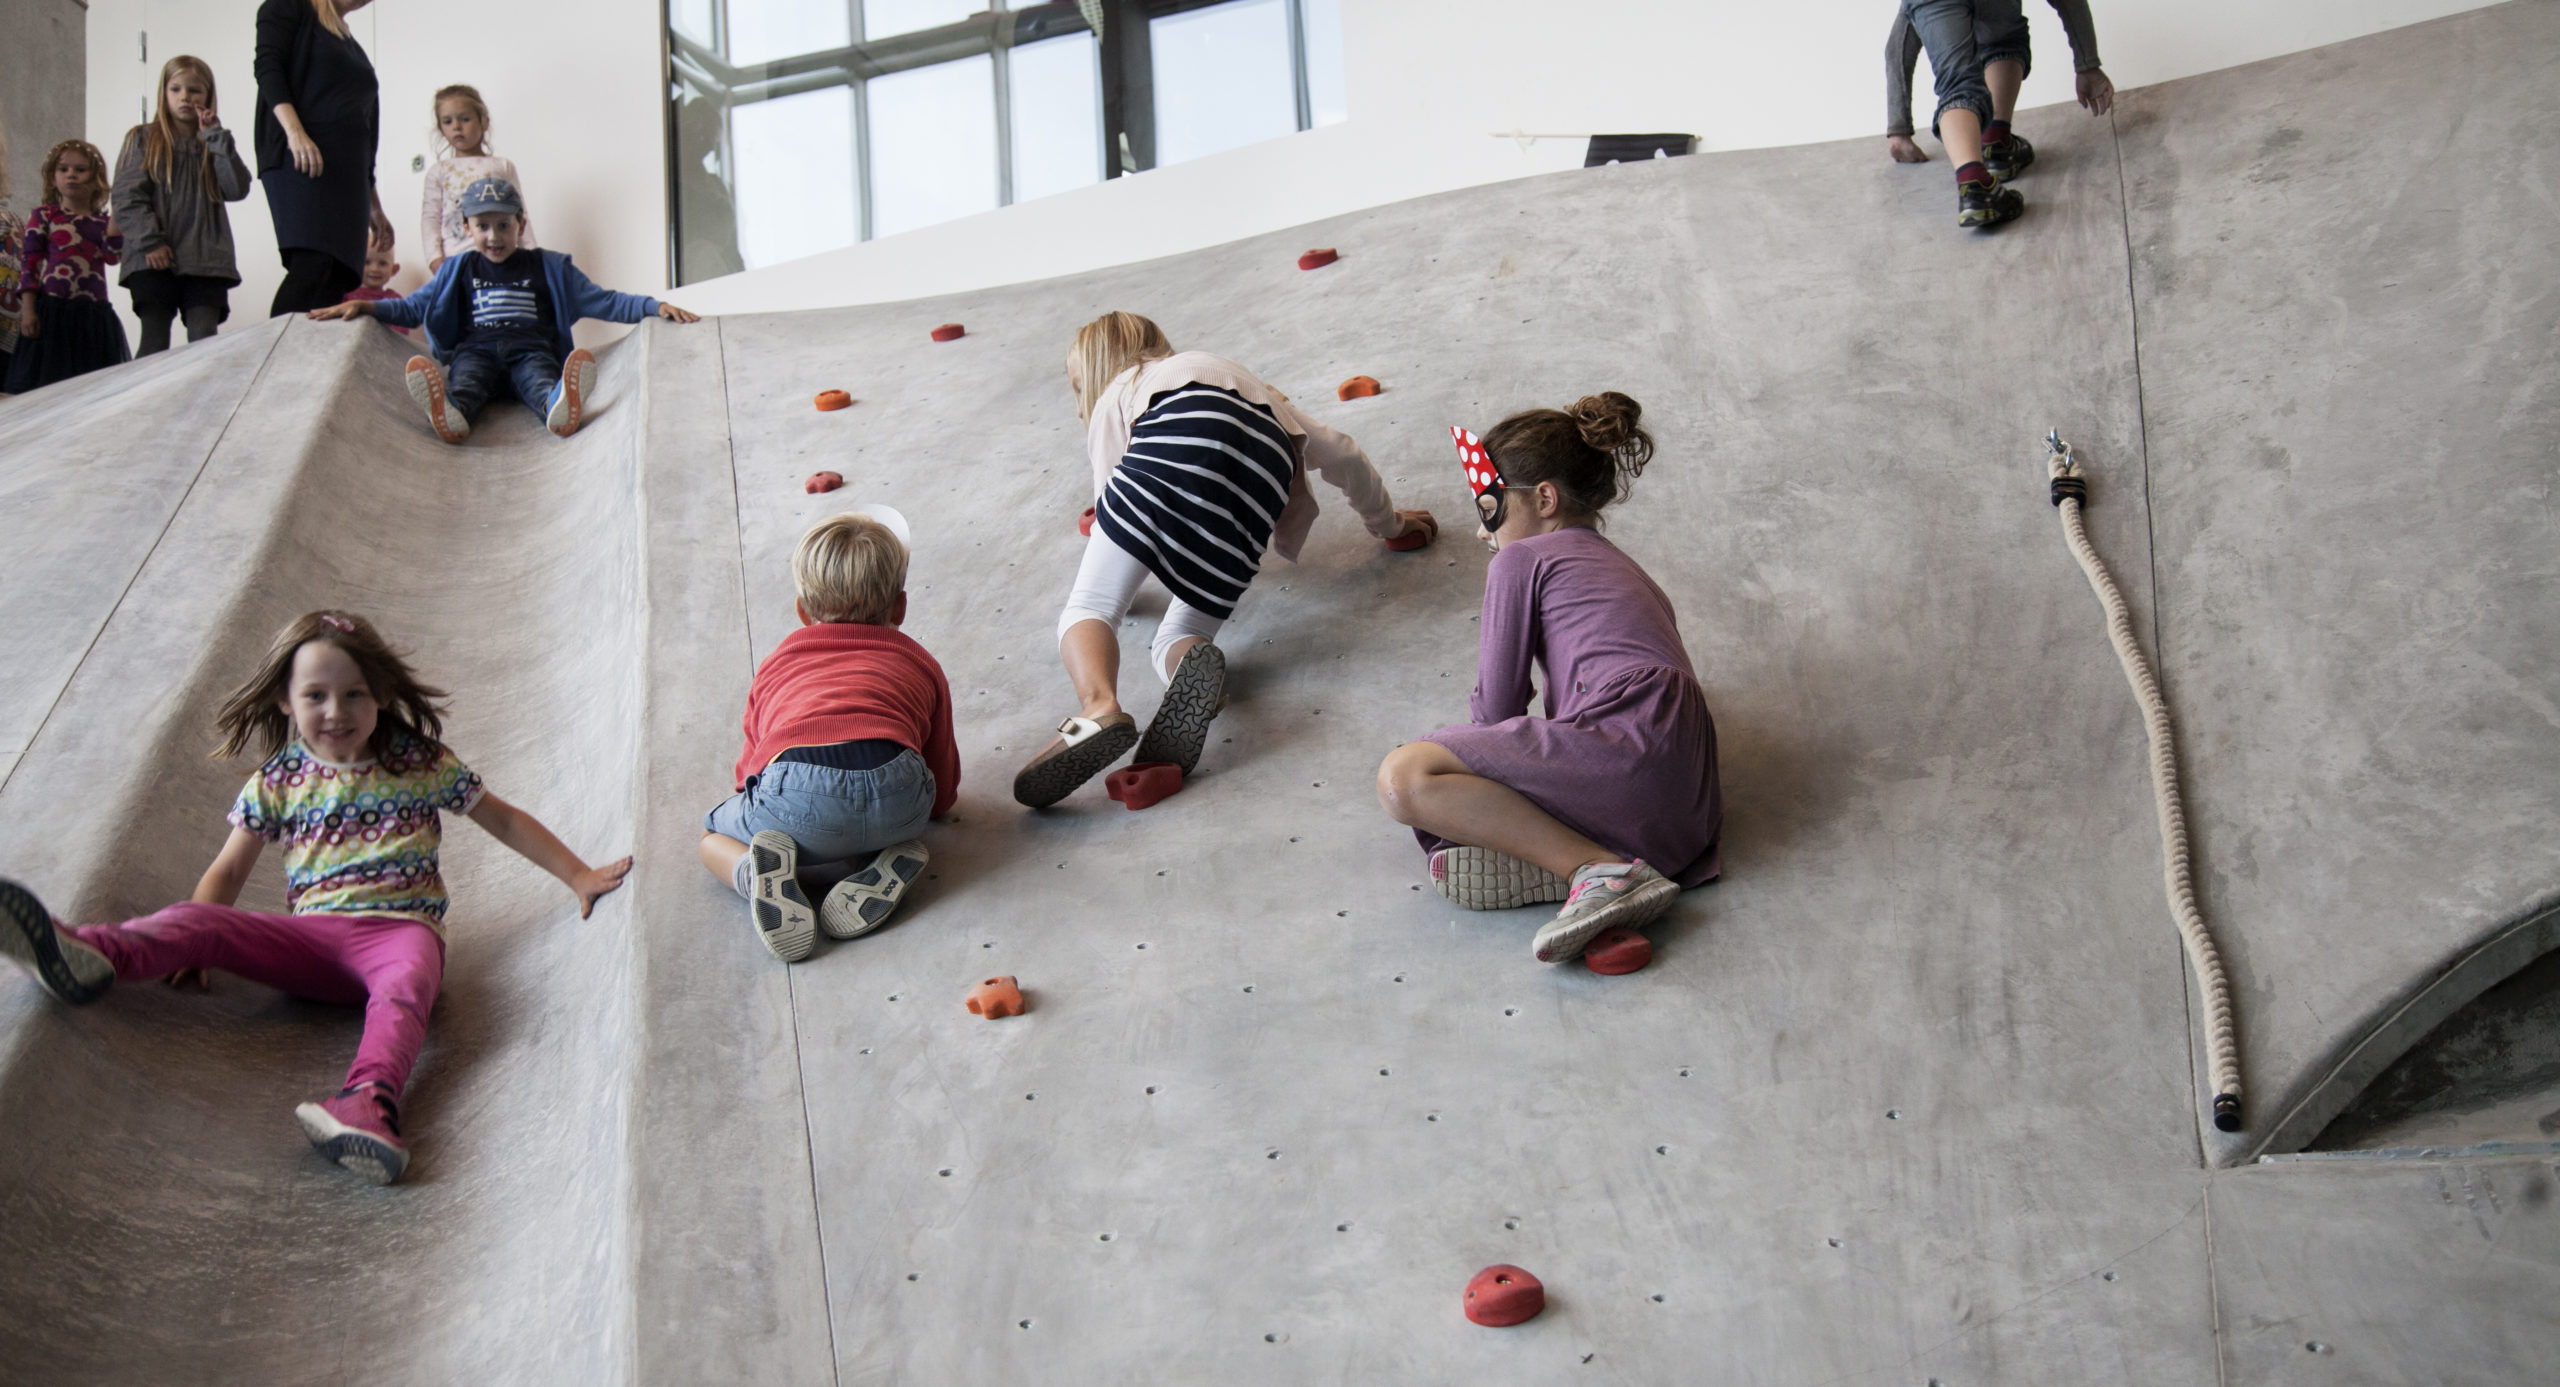 Børn klatrer op ad en skrå betonvæg ved hjælp af indbyggede klatregreb. Ved siden af rutscher børn ned ad en støbt rutschebane i betonoverfladen